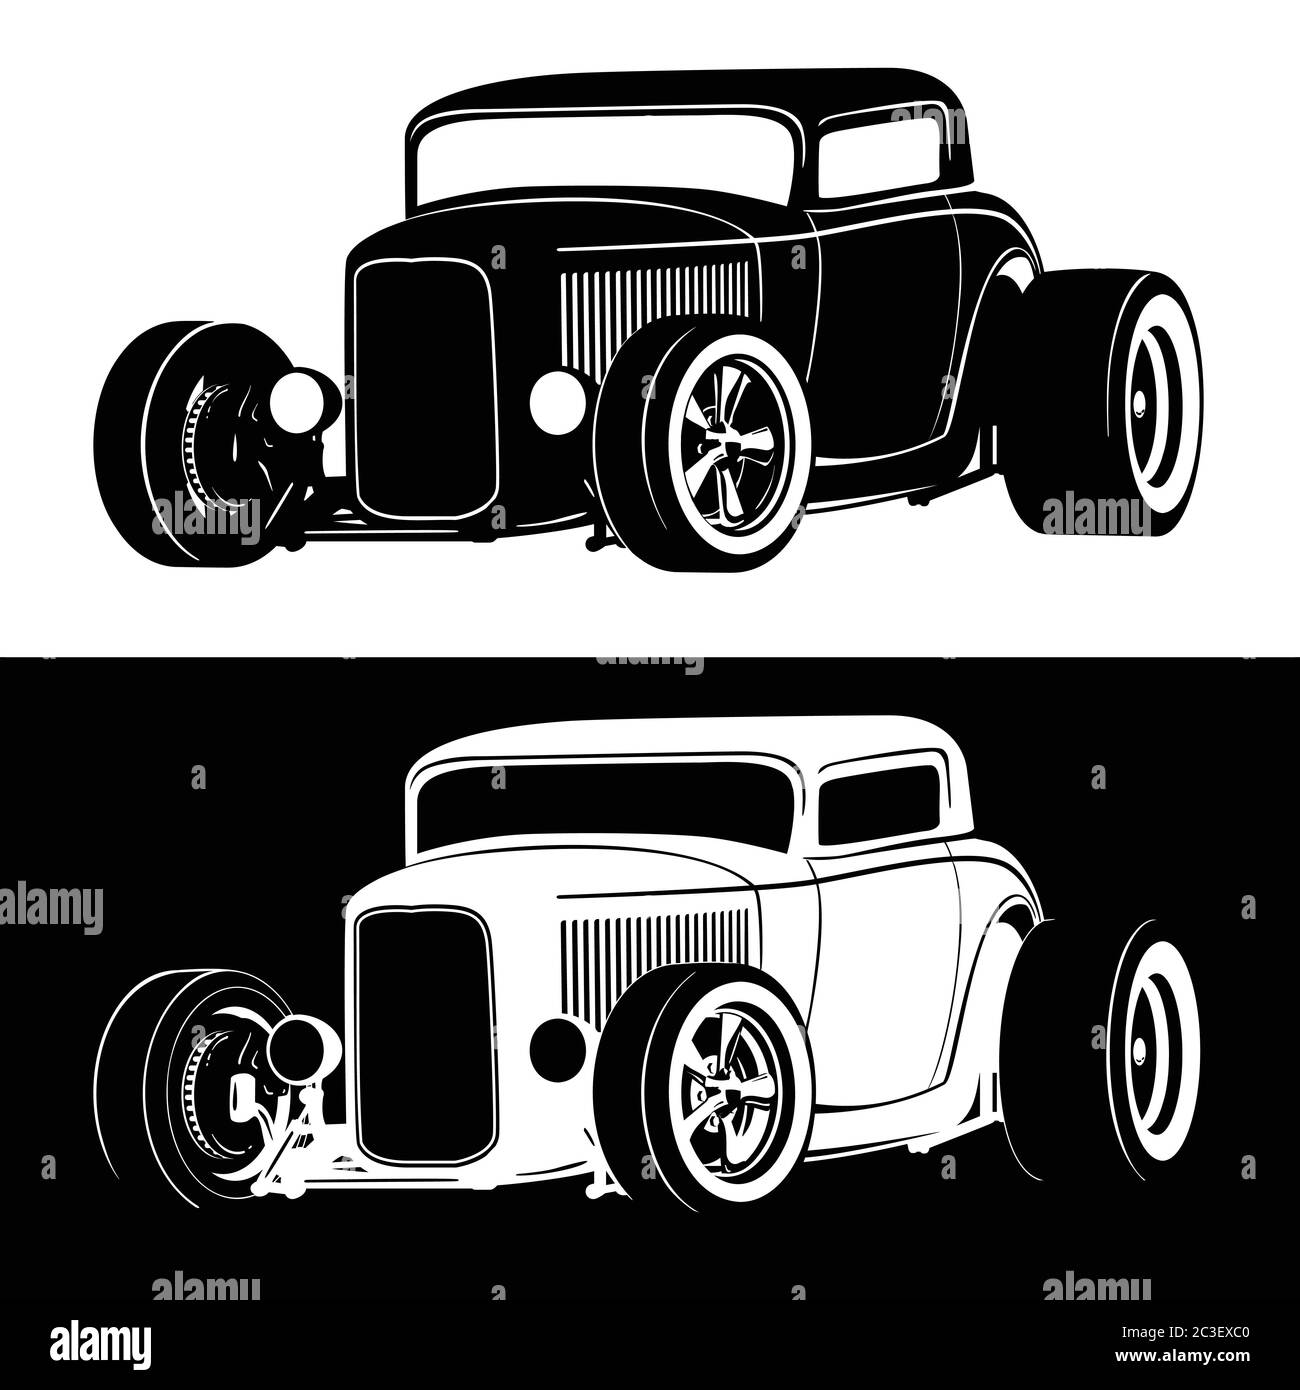 Illustration vectorielle isolée de voiture à tige chaude classique américaine en noir sur blanc et blanc sur noir Illustration de Vecteur